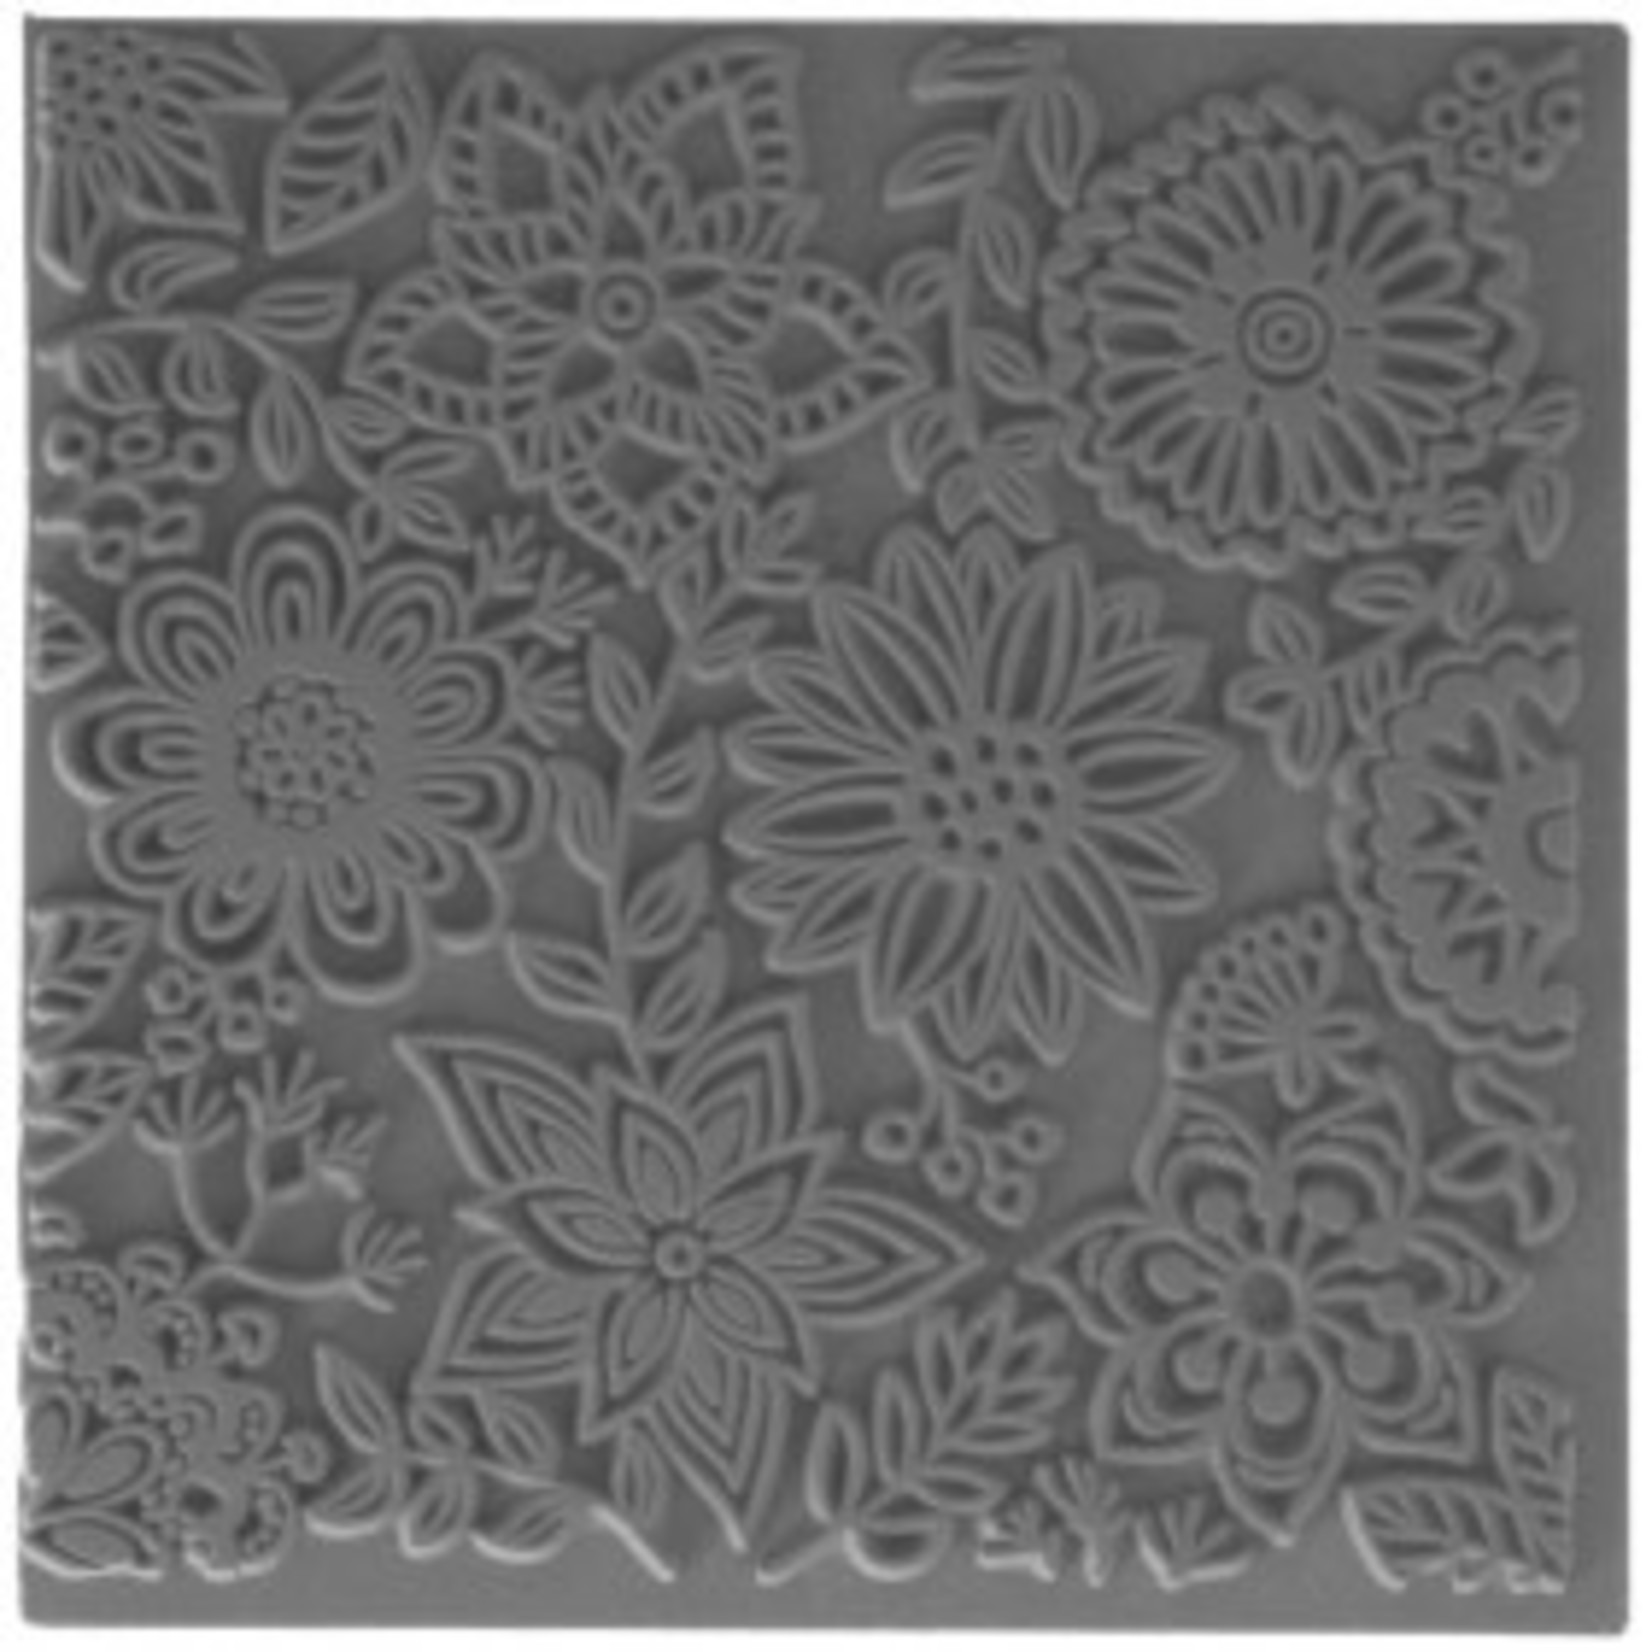 Cernit Cernit Texture Plate 9 X 9 cm - Blossoms